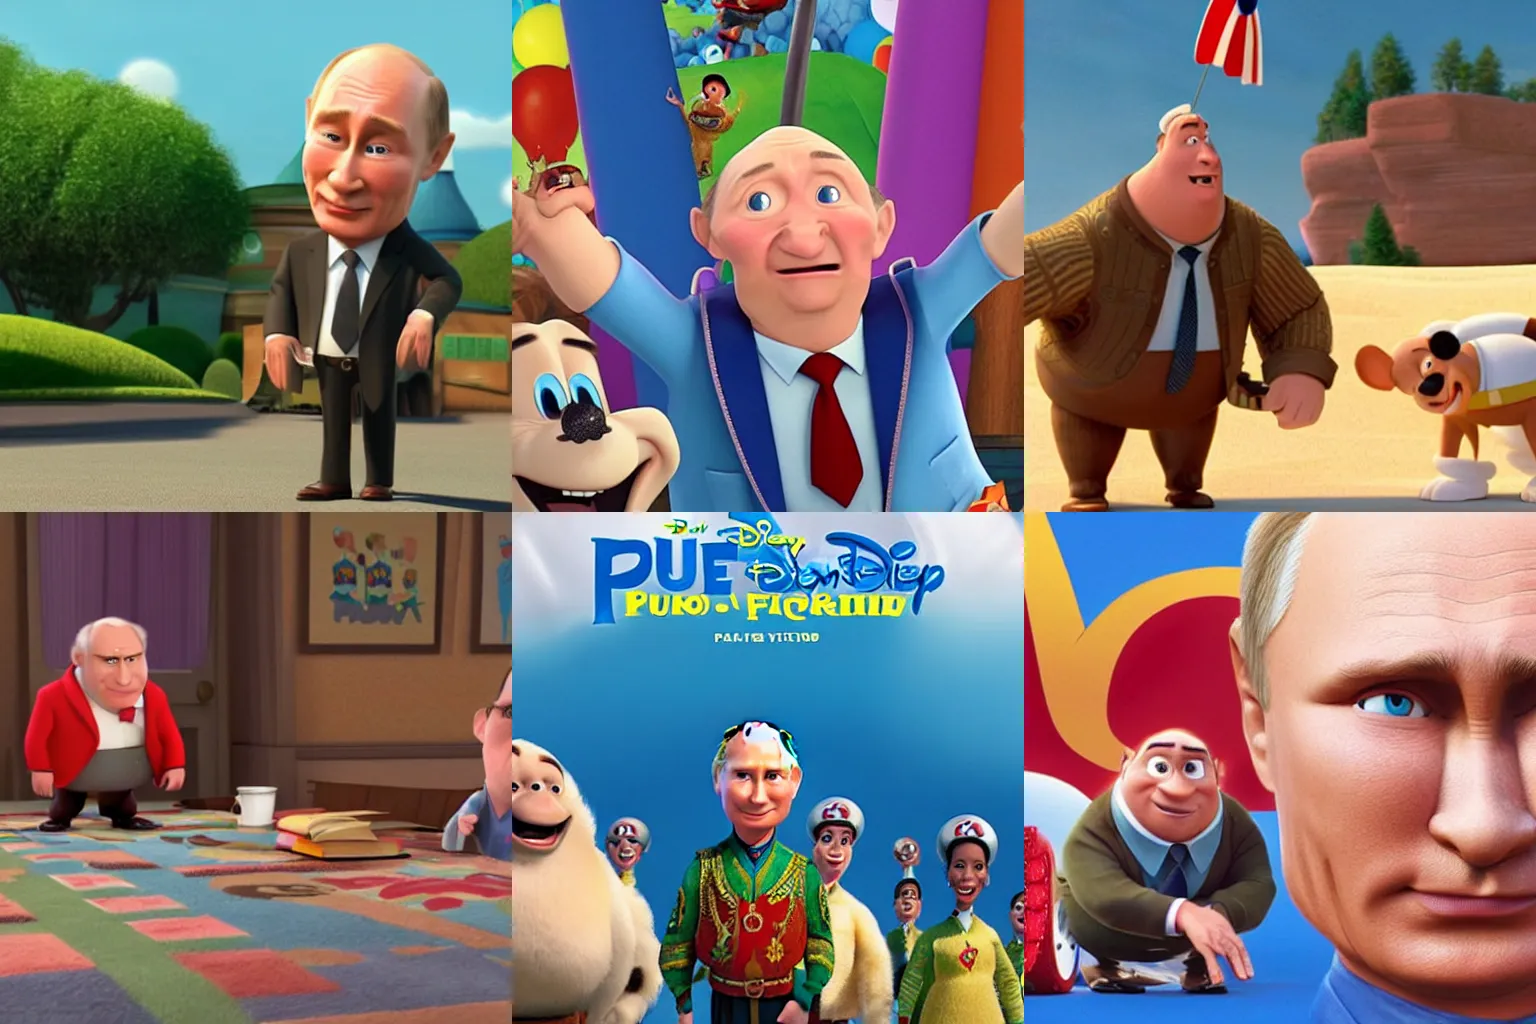 Prompt: Putin as seen in Disney Pixar\'s Up (2009)